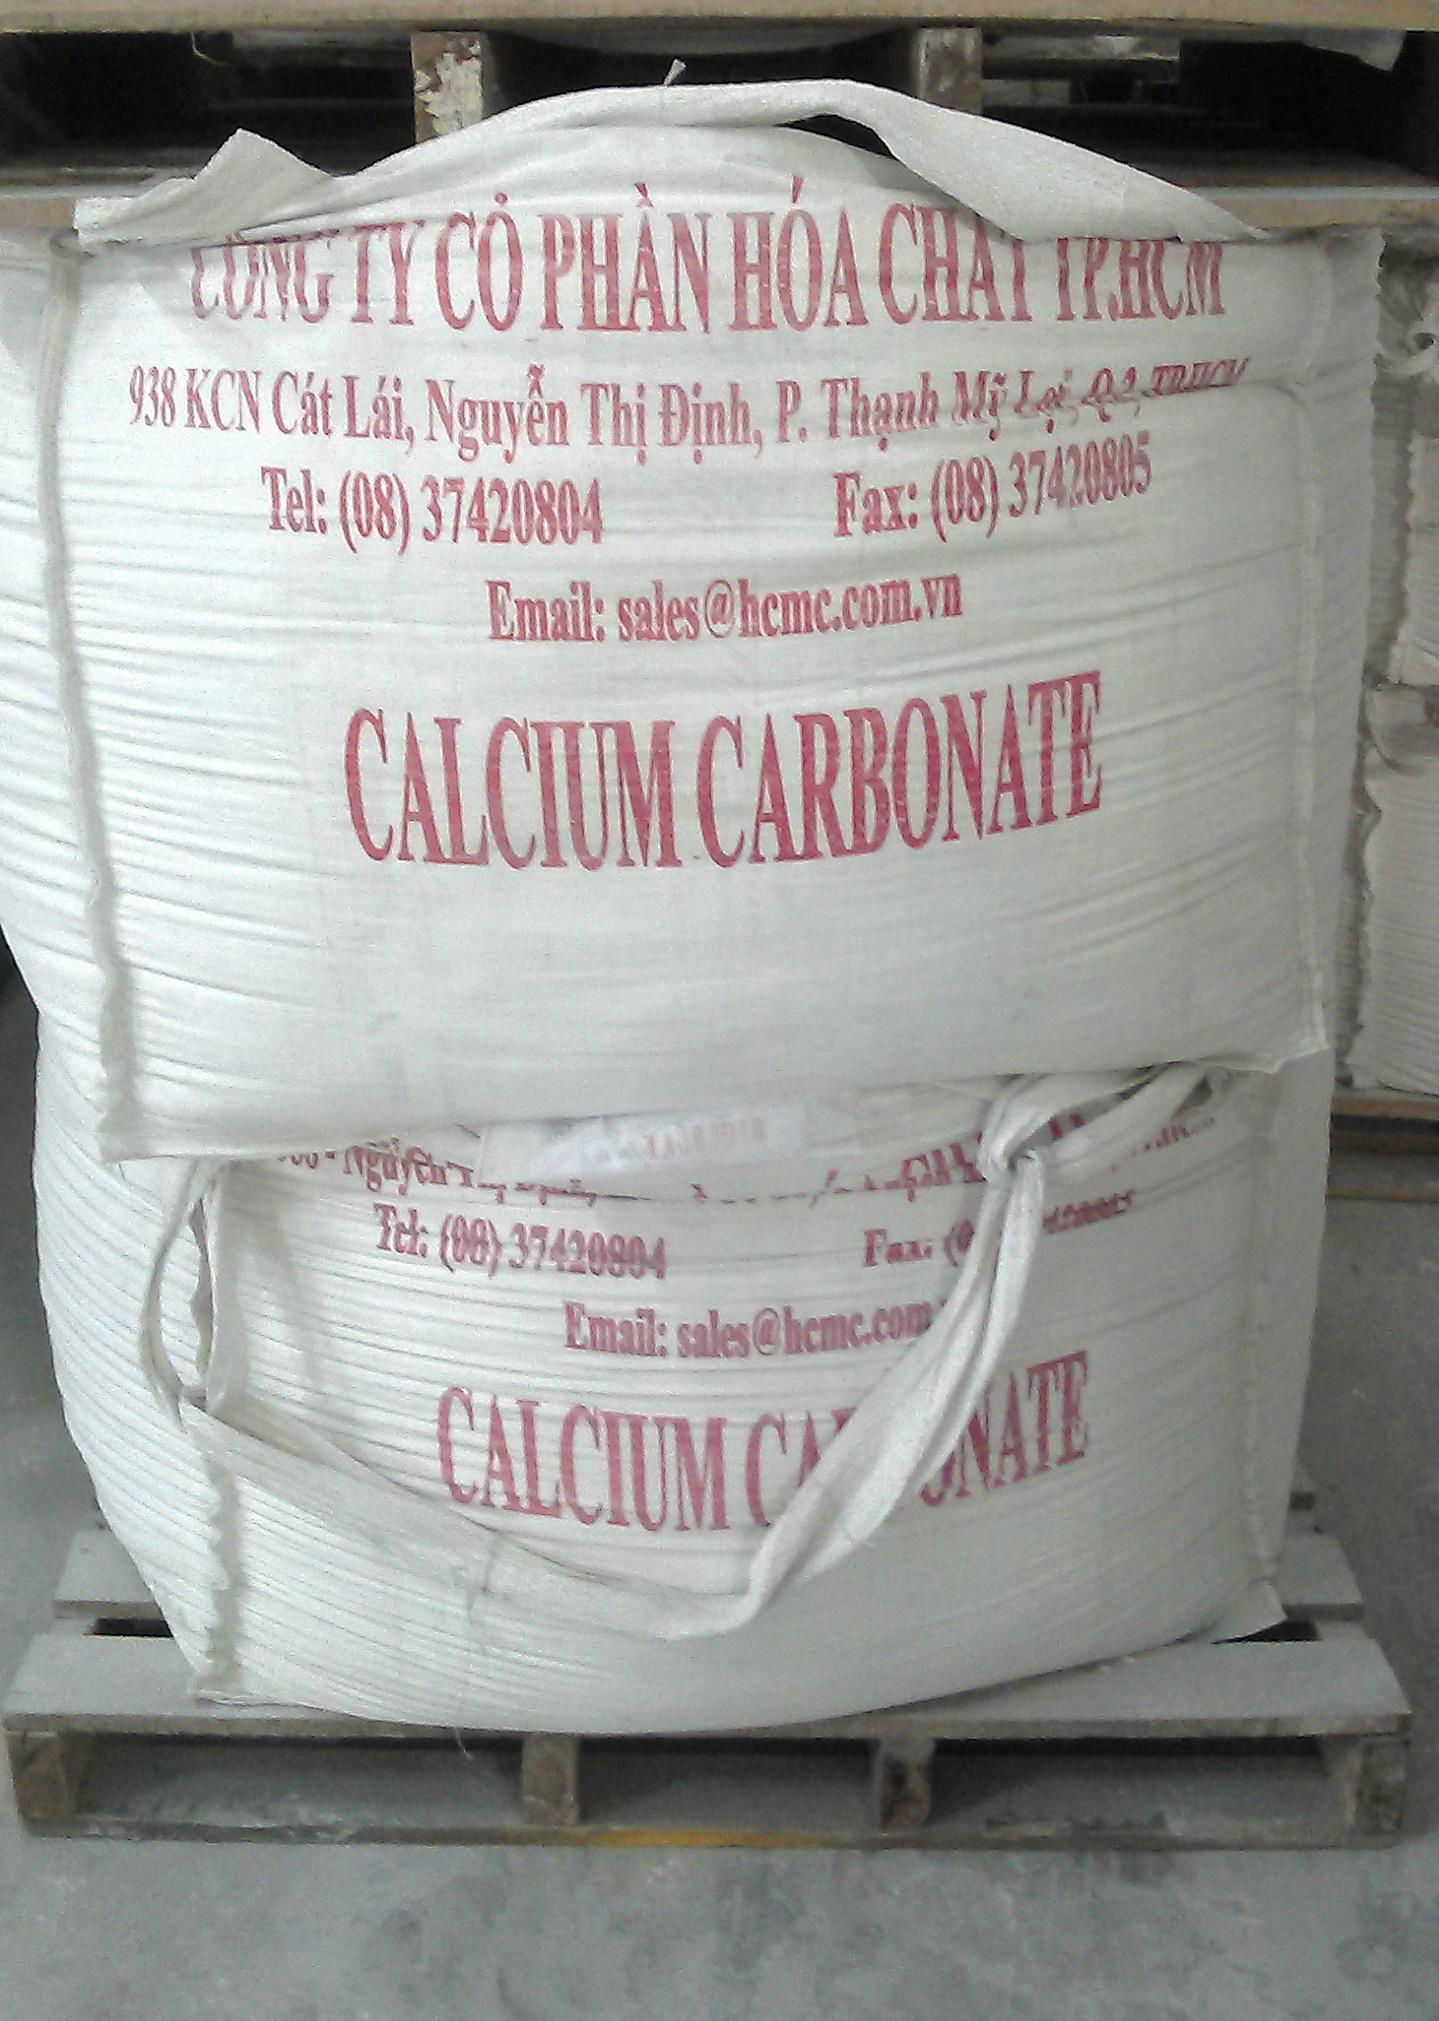 Calcium carbonate powder uncoated 3